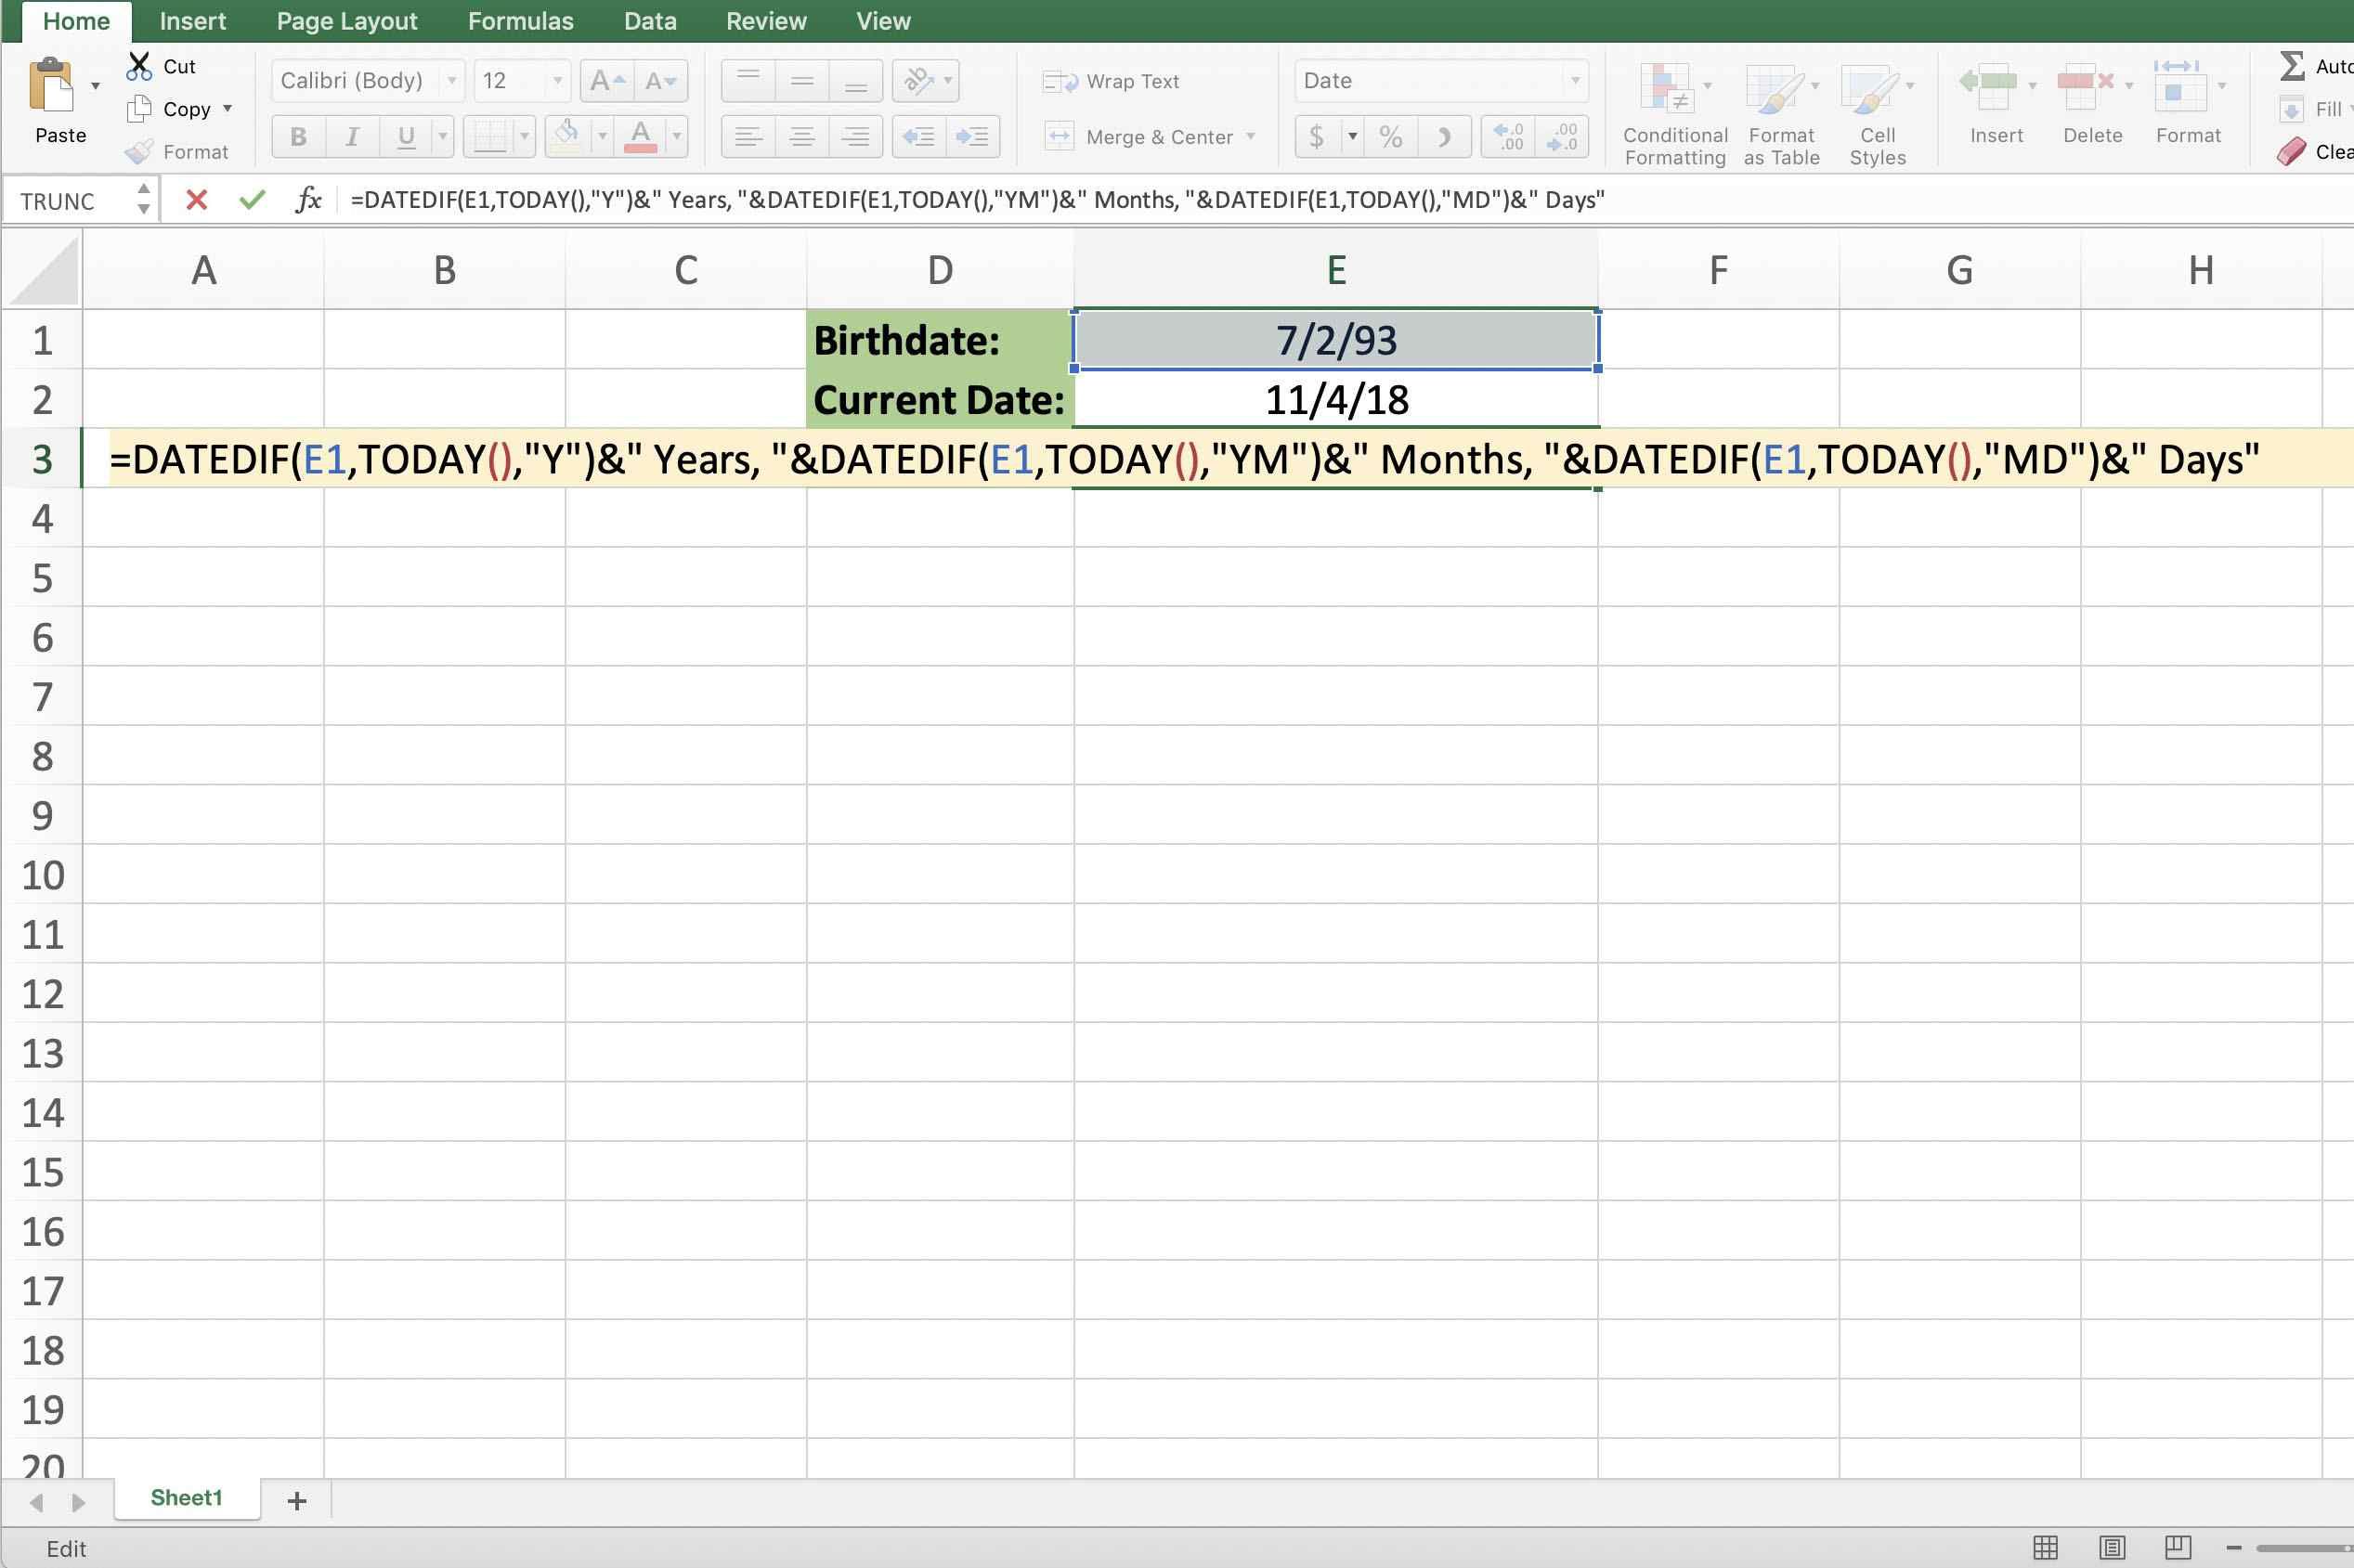 Снимок экрана Excel, показывающий всю формулу возраста